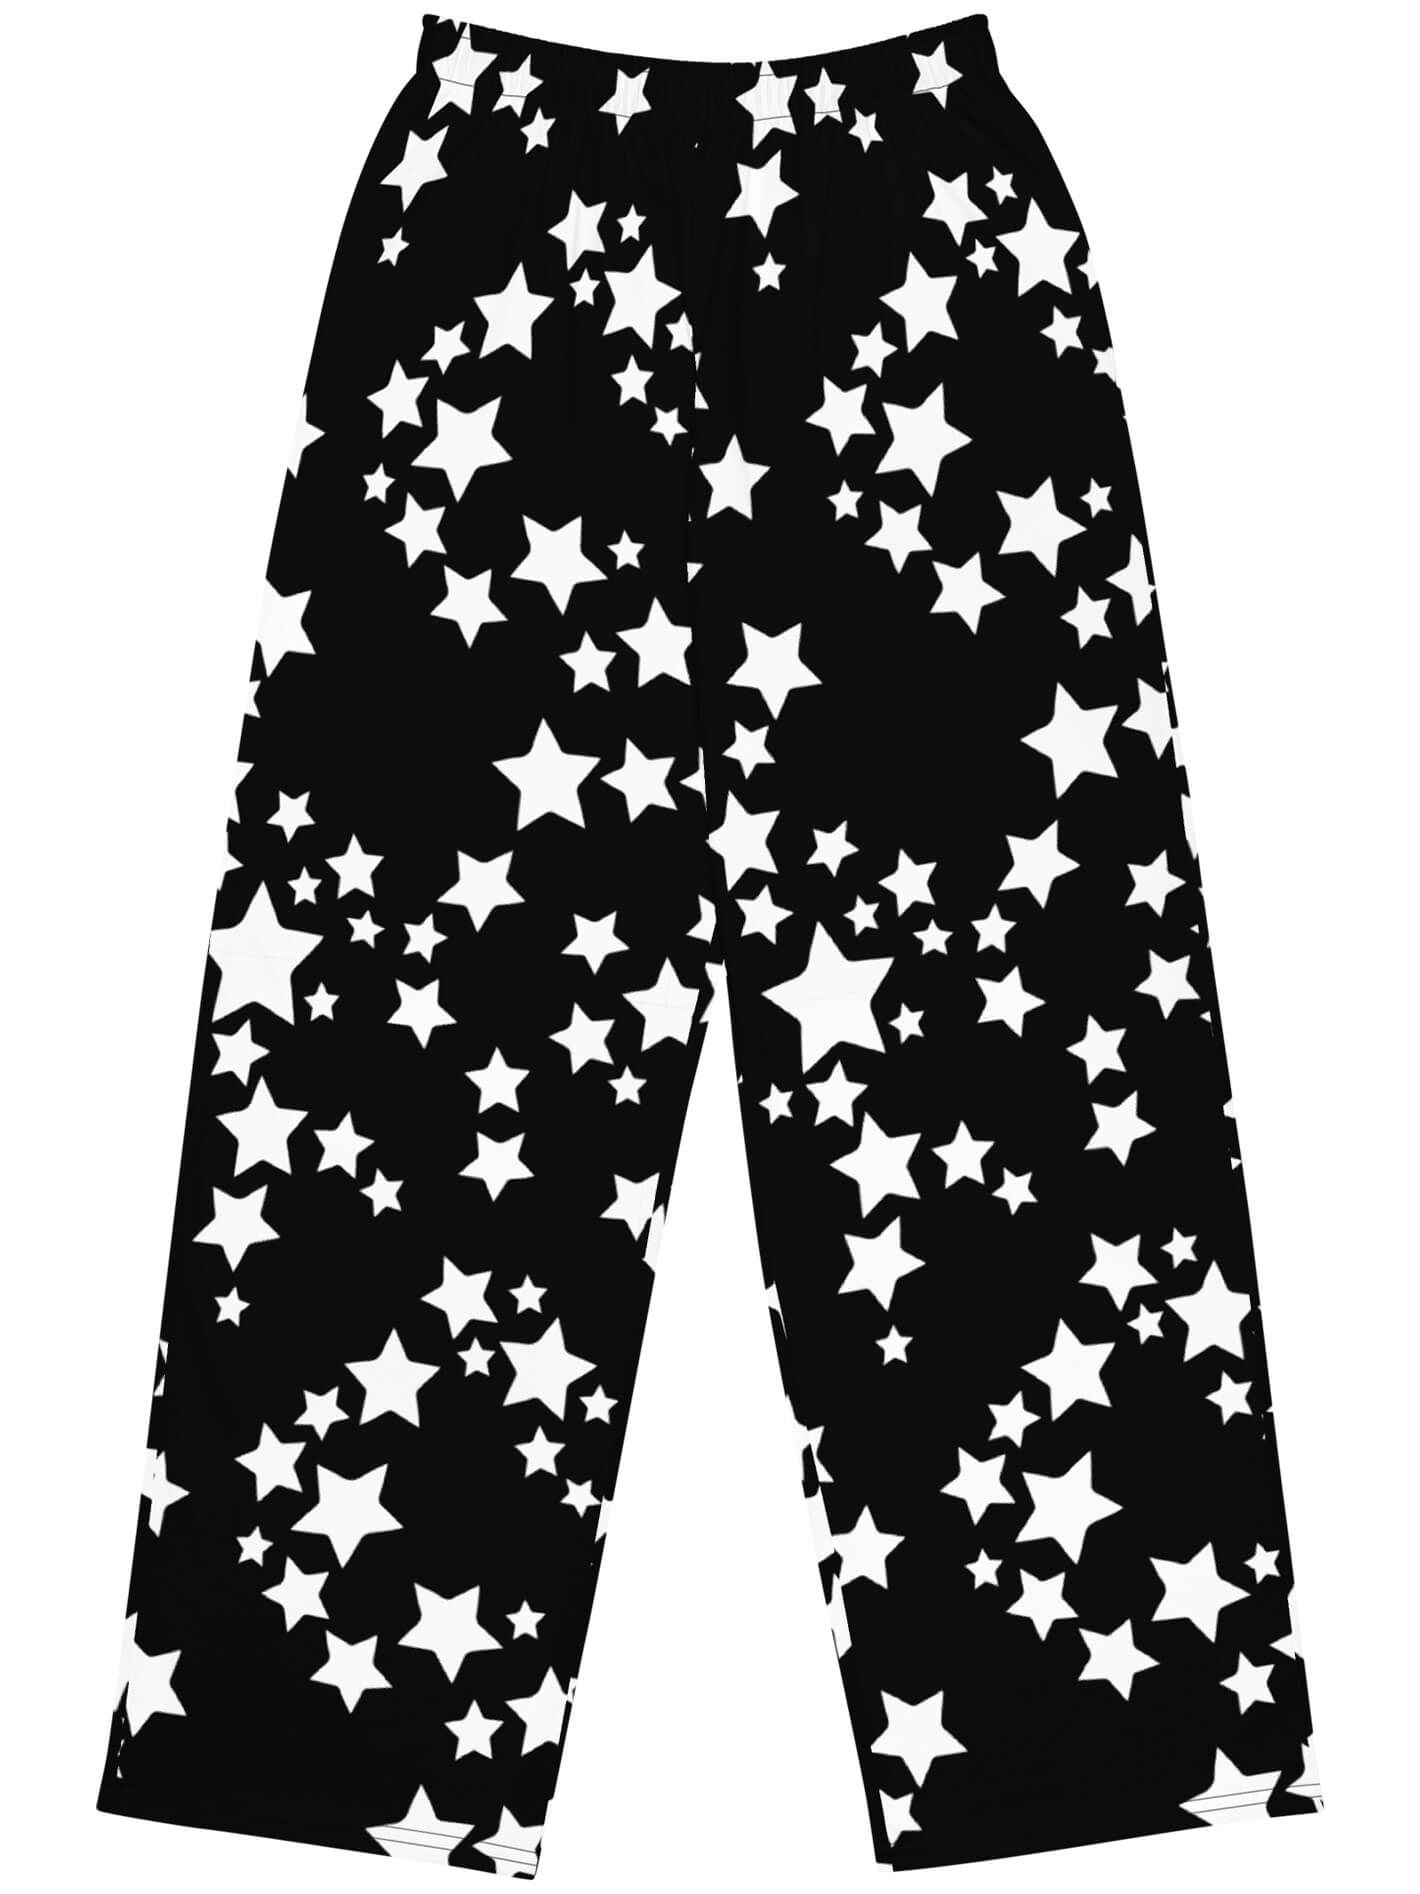 Star print plus size pants.